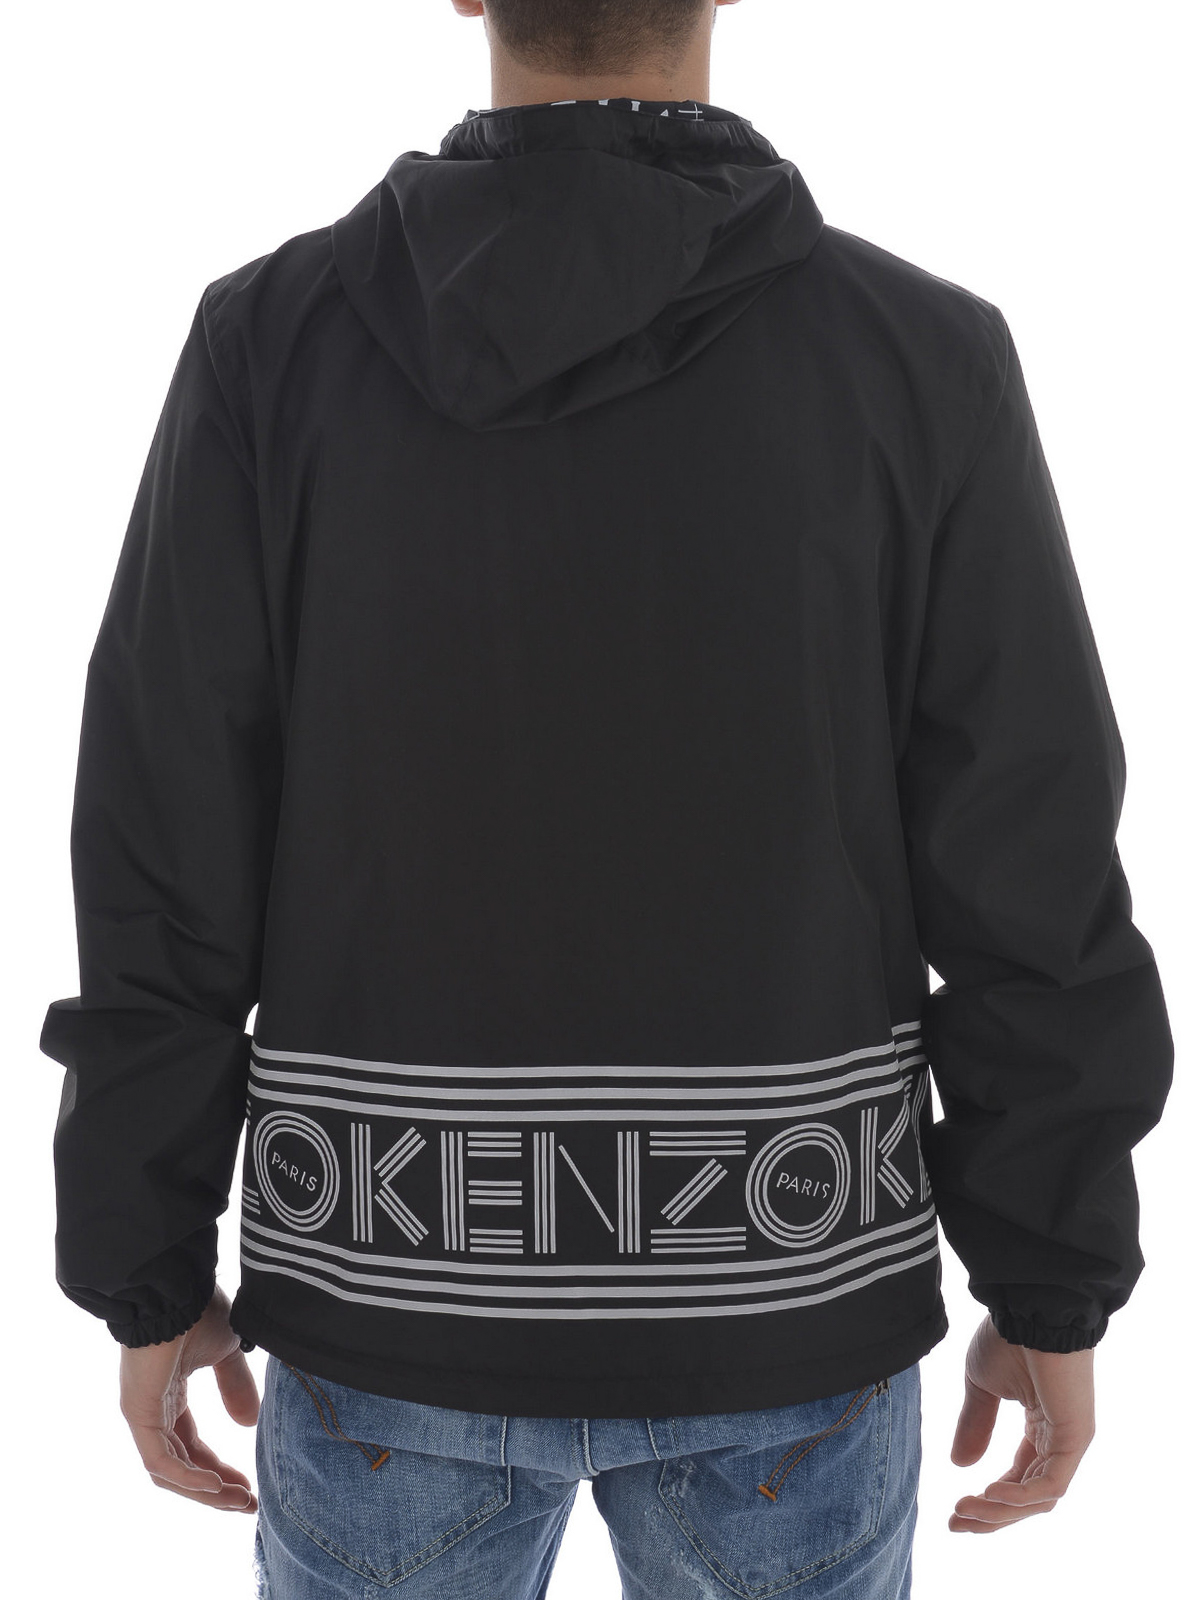 Kenzo - Reversible wind breaker jacket 